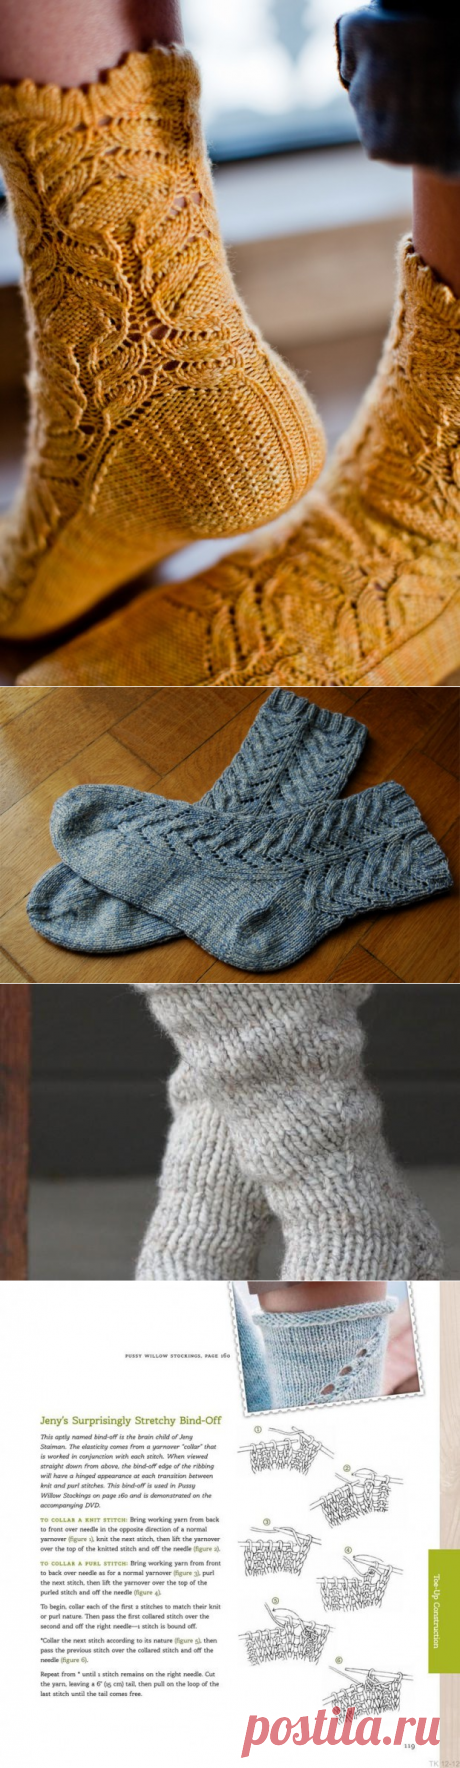 Вязание носков спицами, красивые узоры